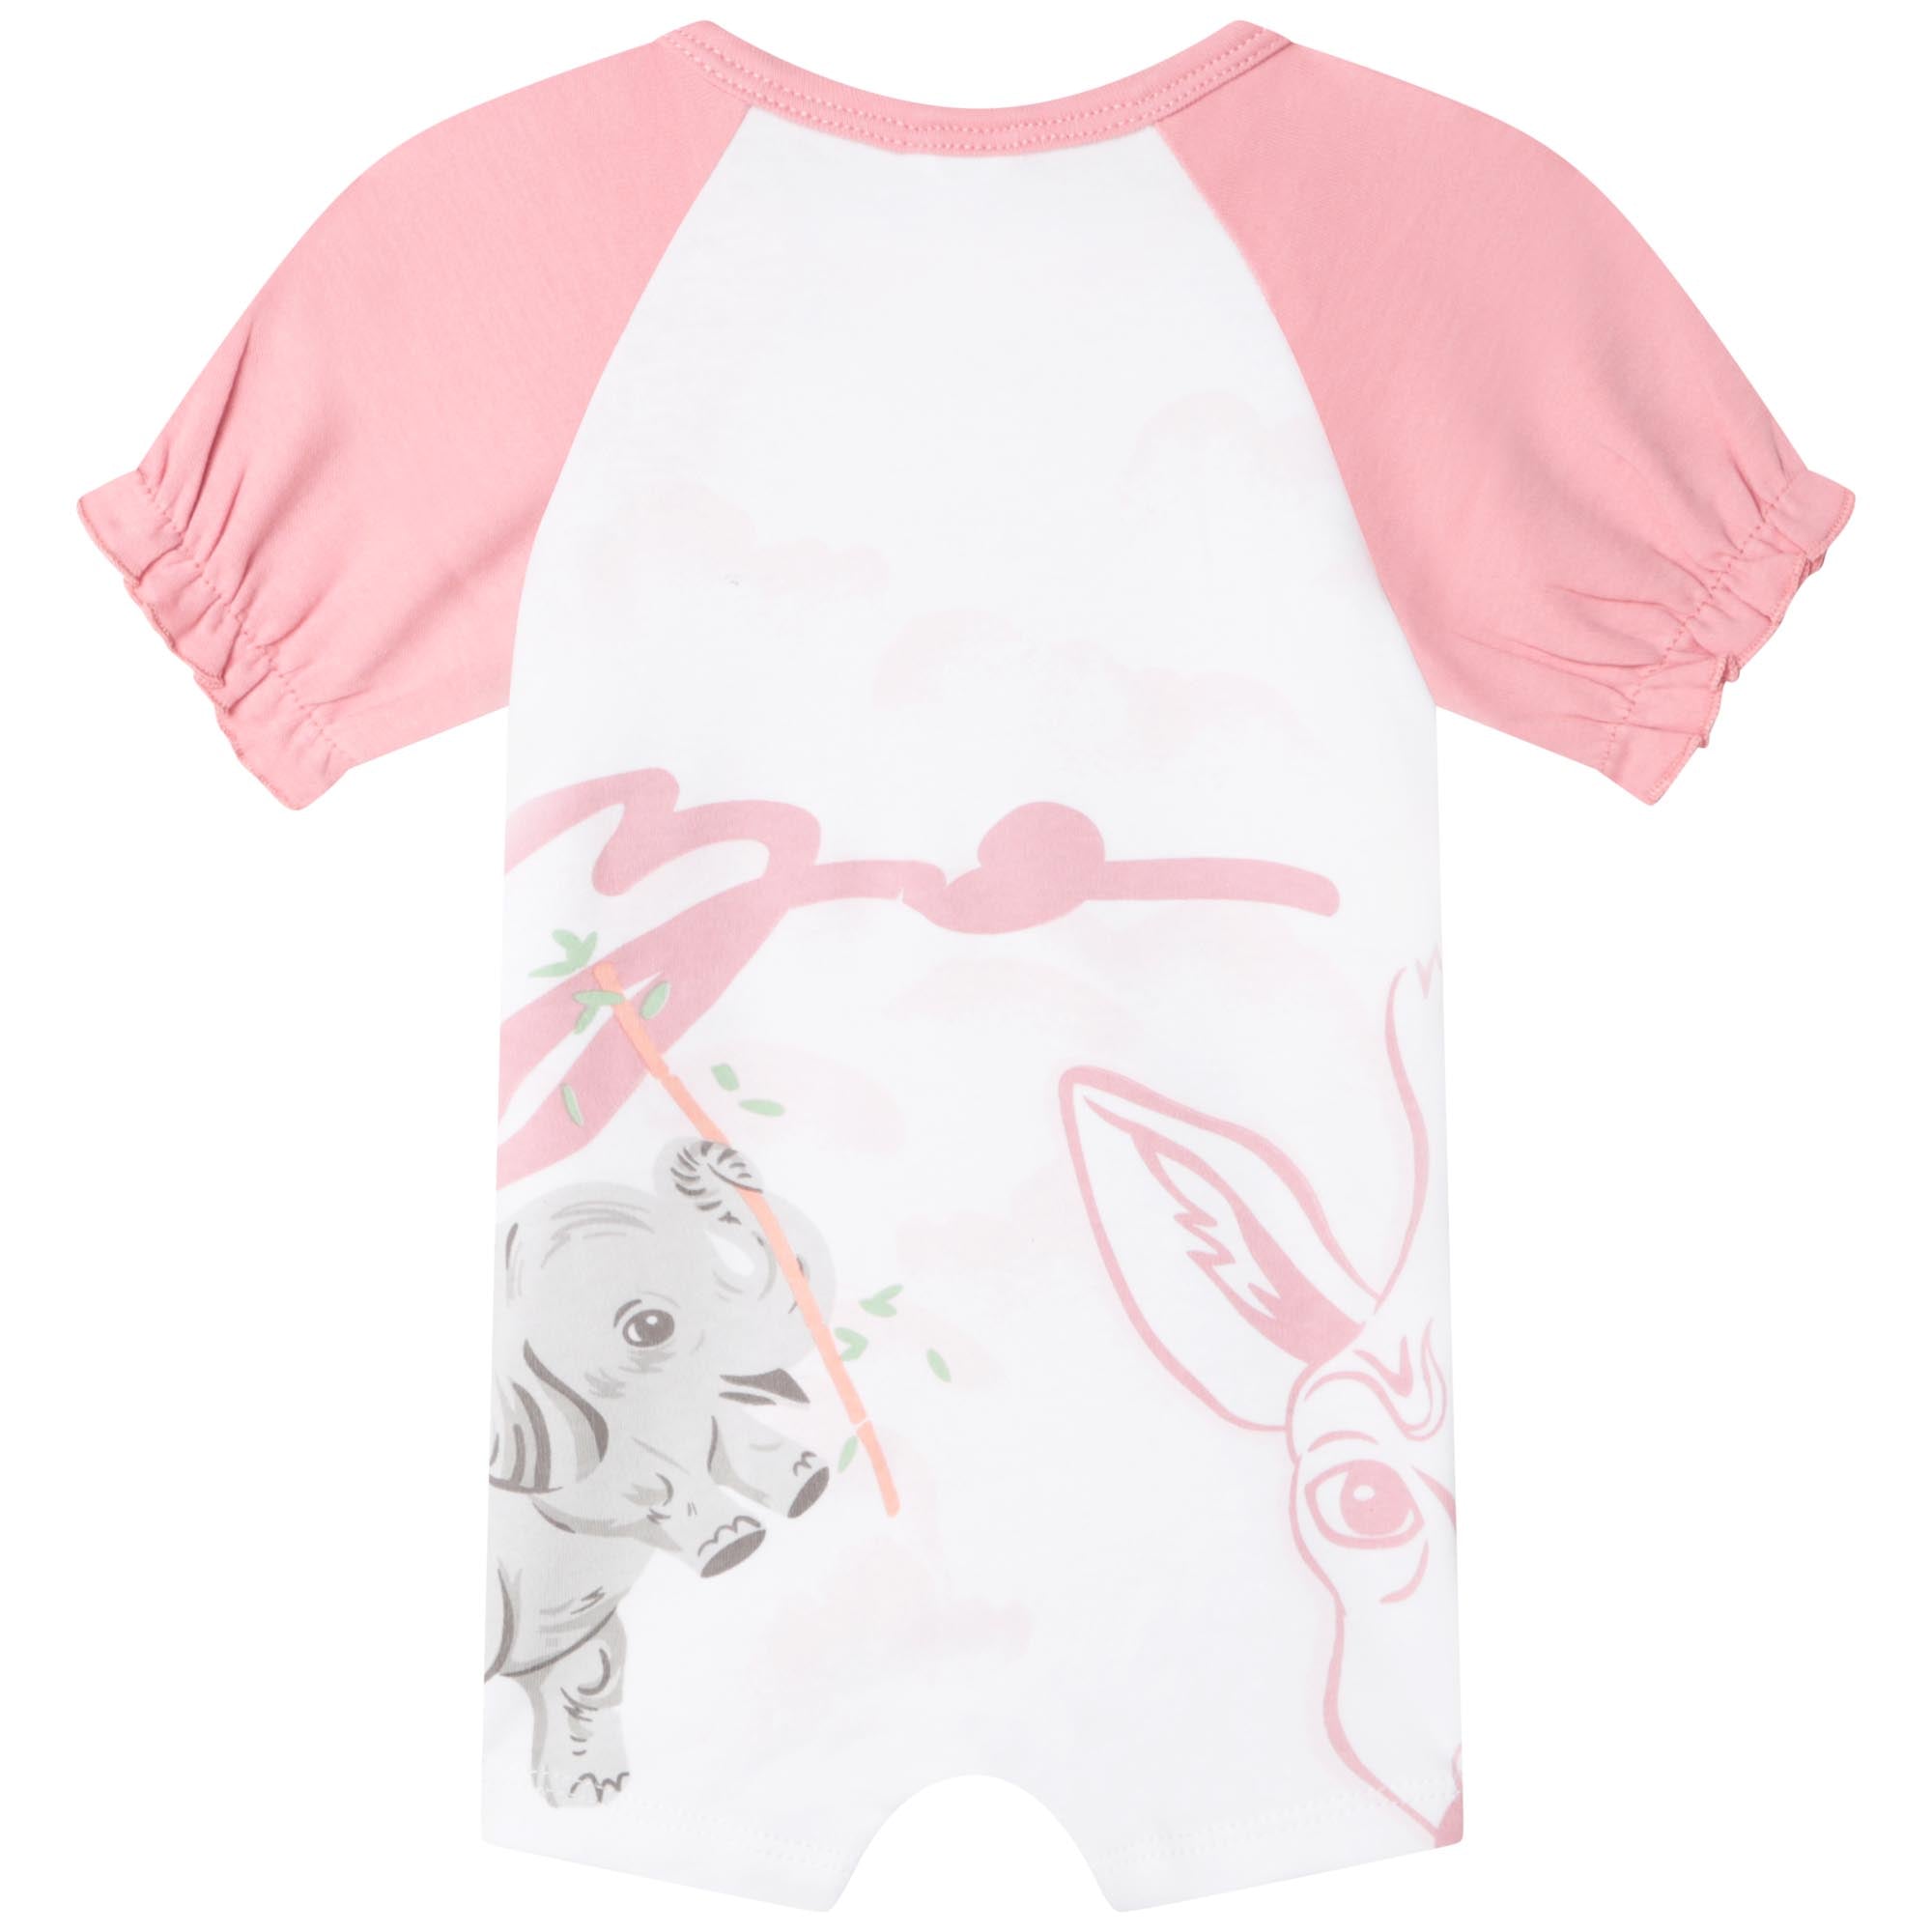 Baby Girls Pink Printed Cotton Babysuit